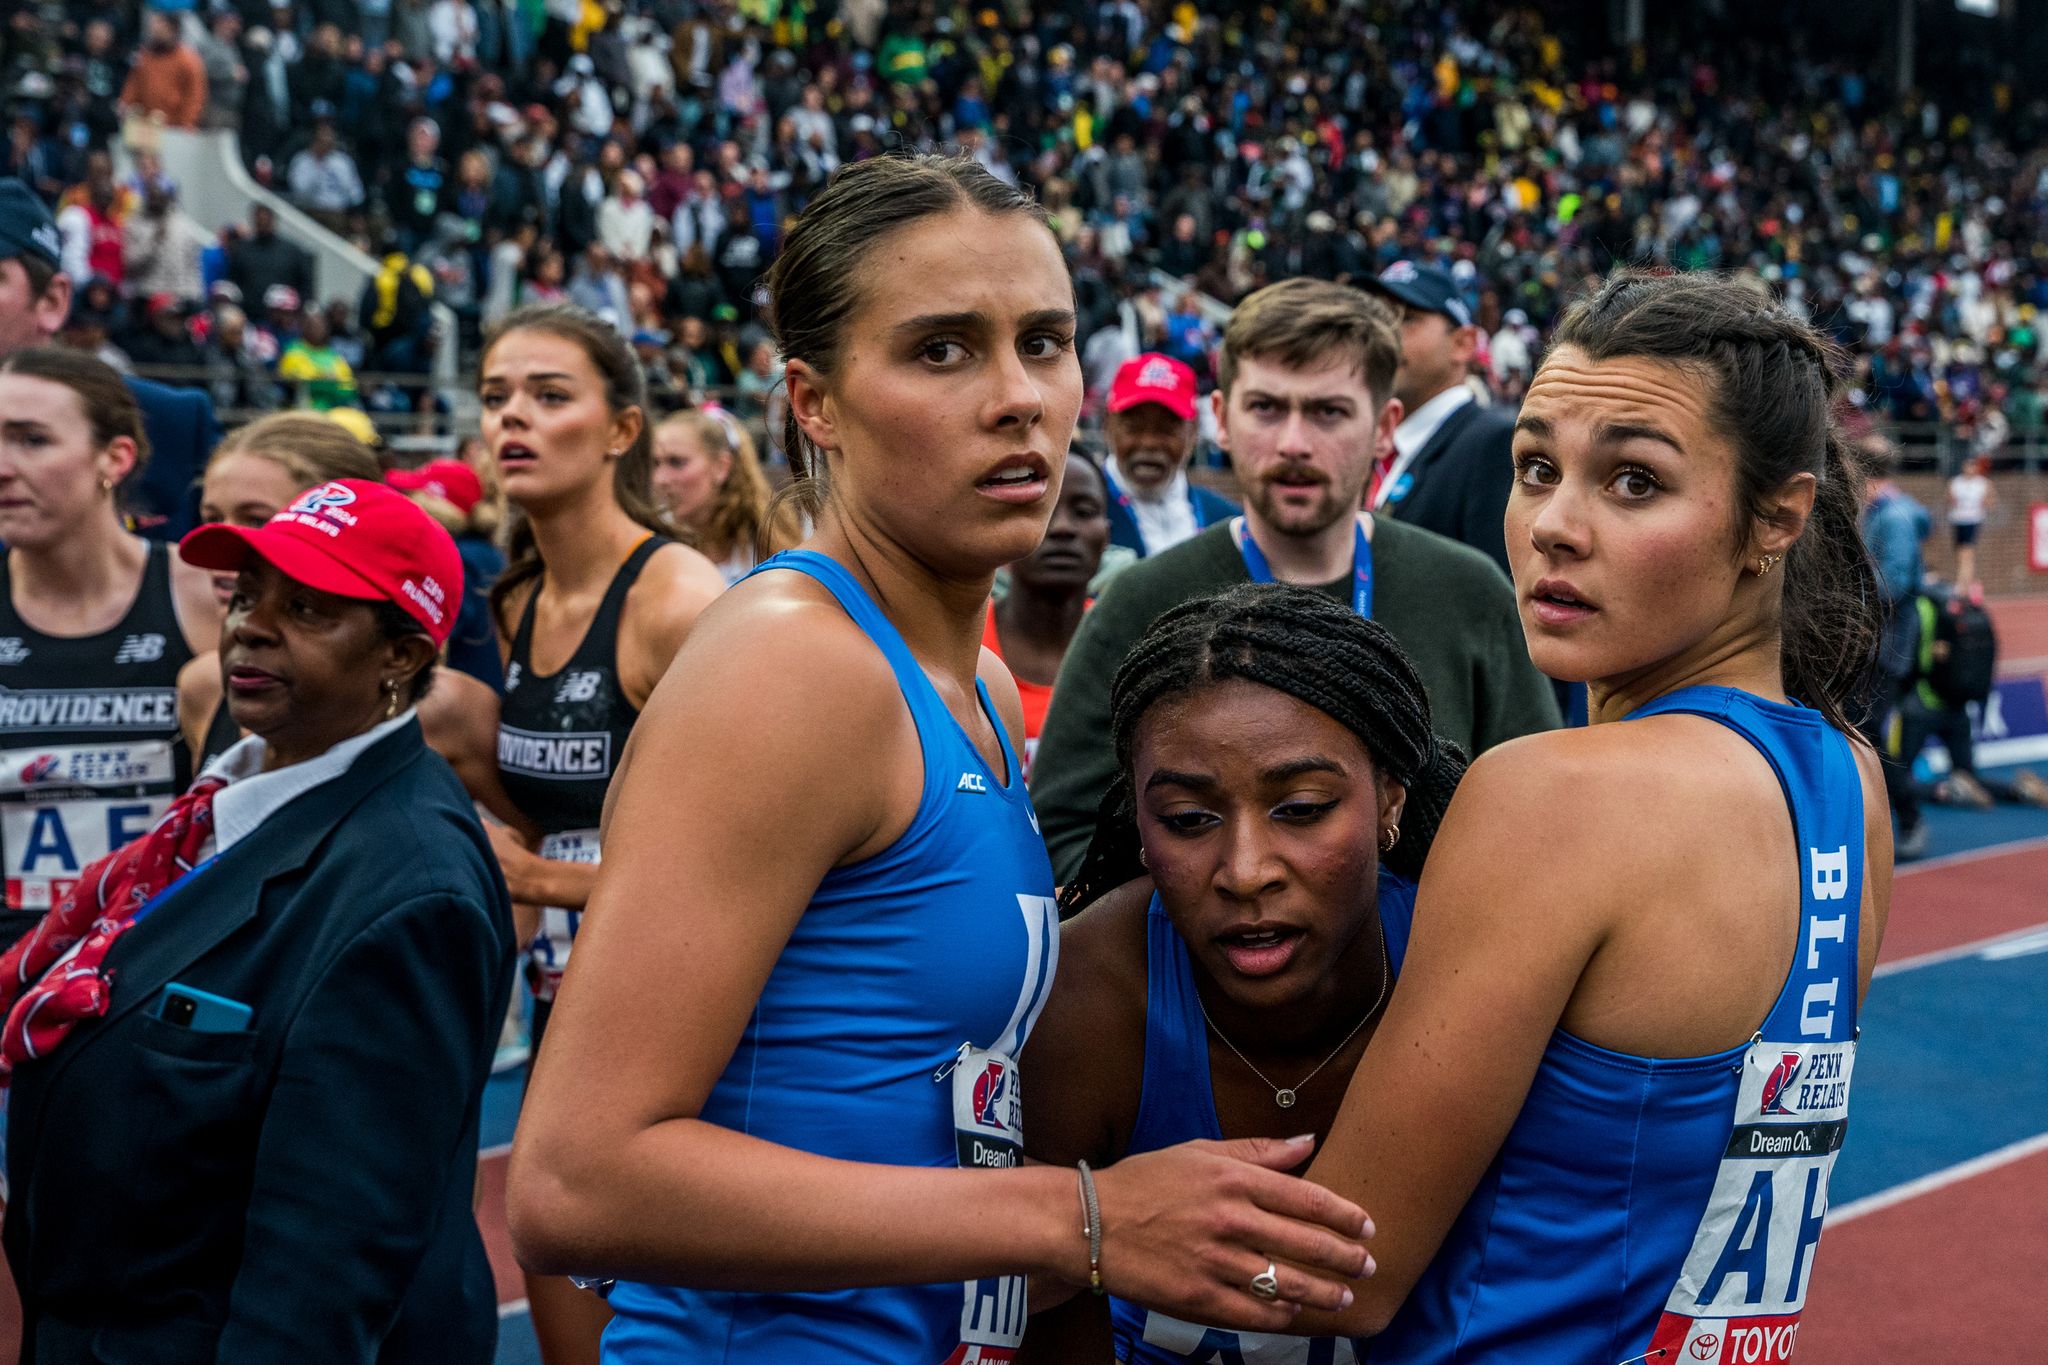 a group of women after a running race